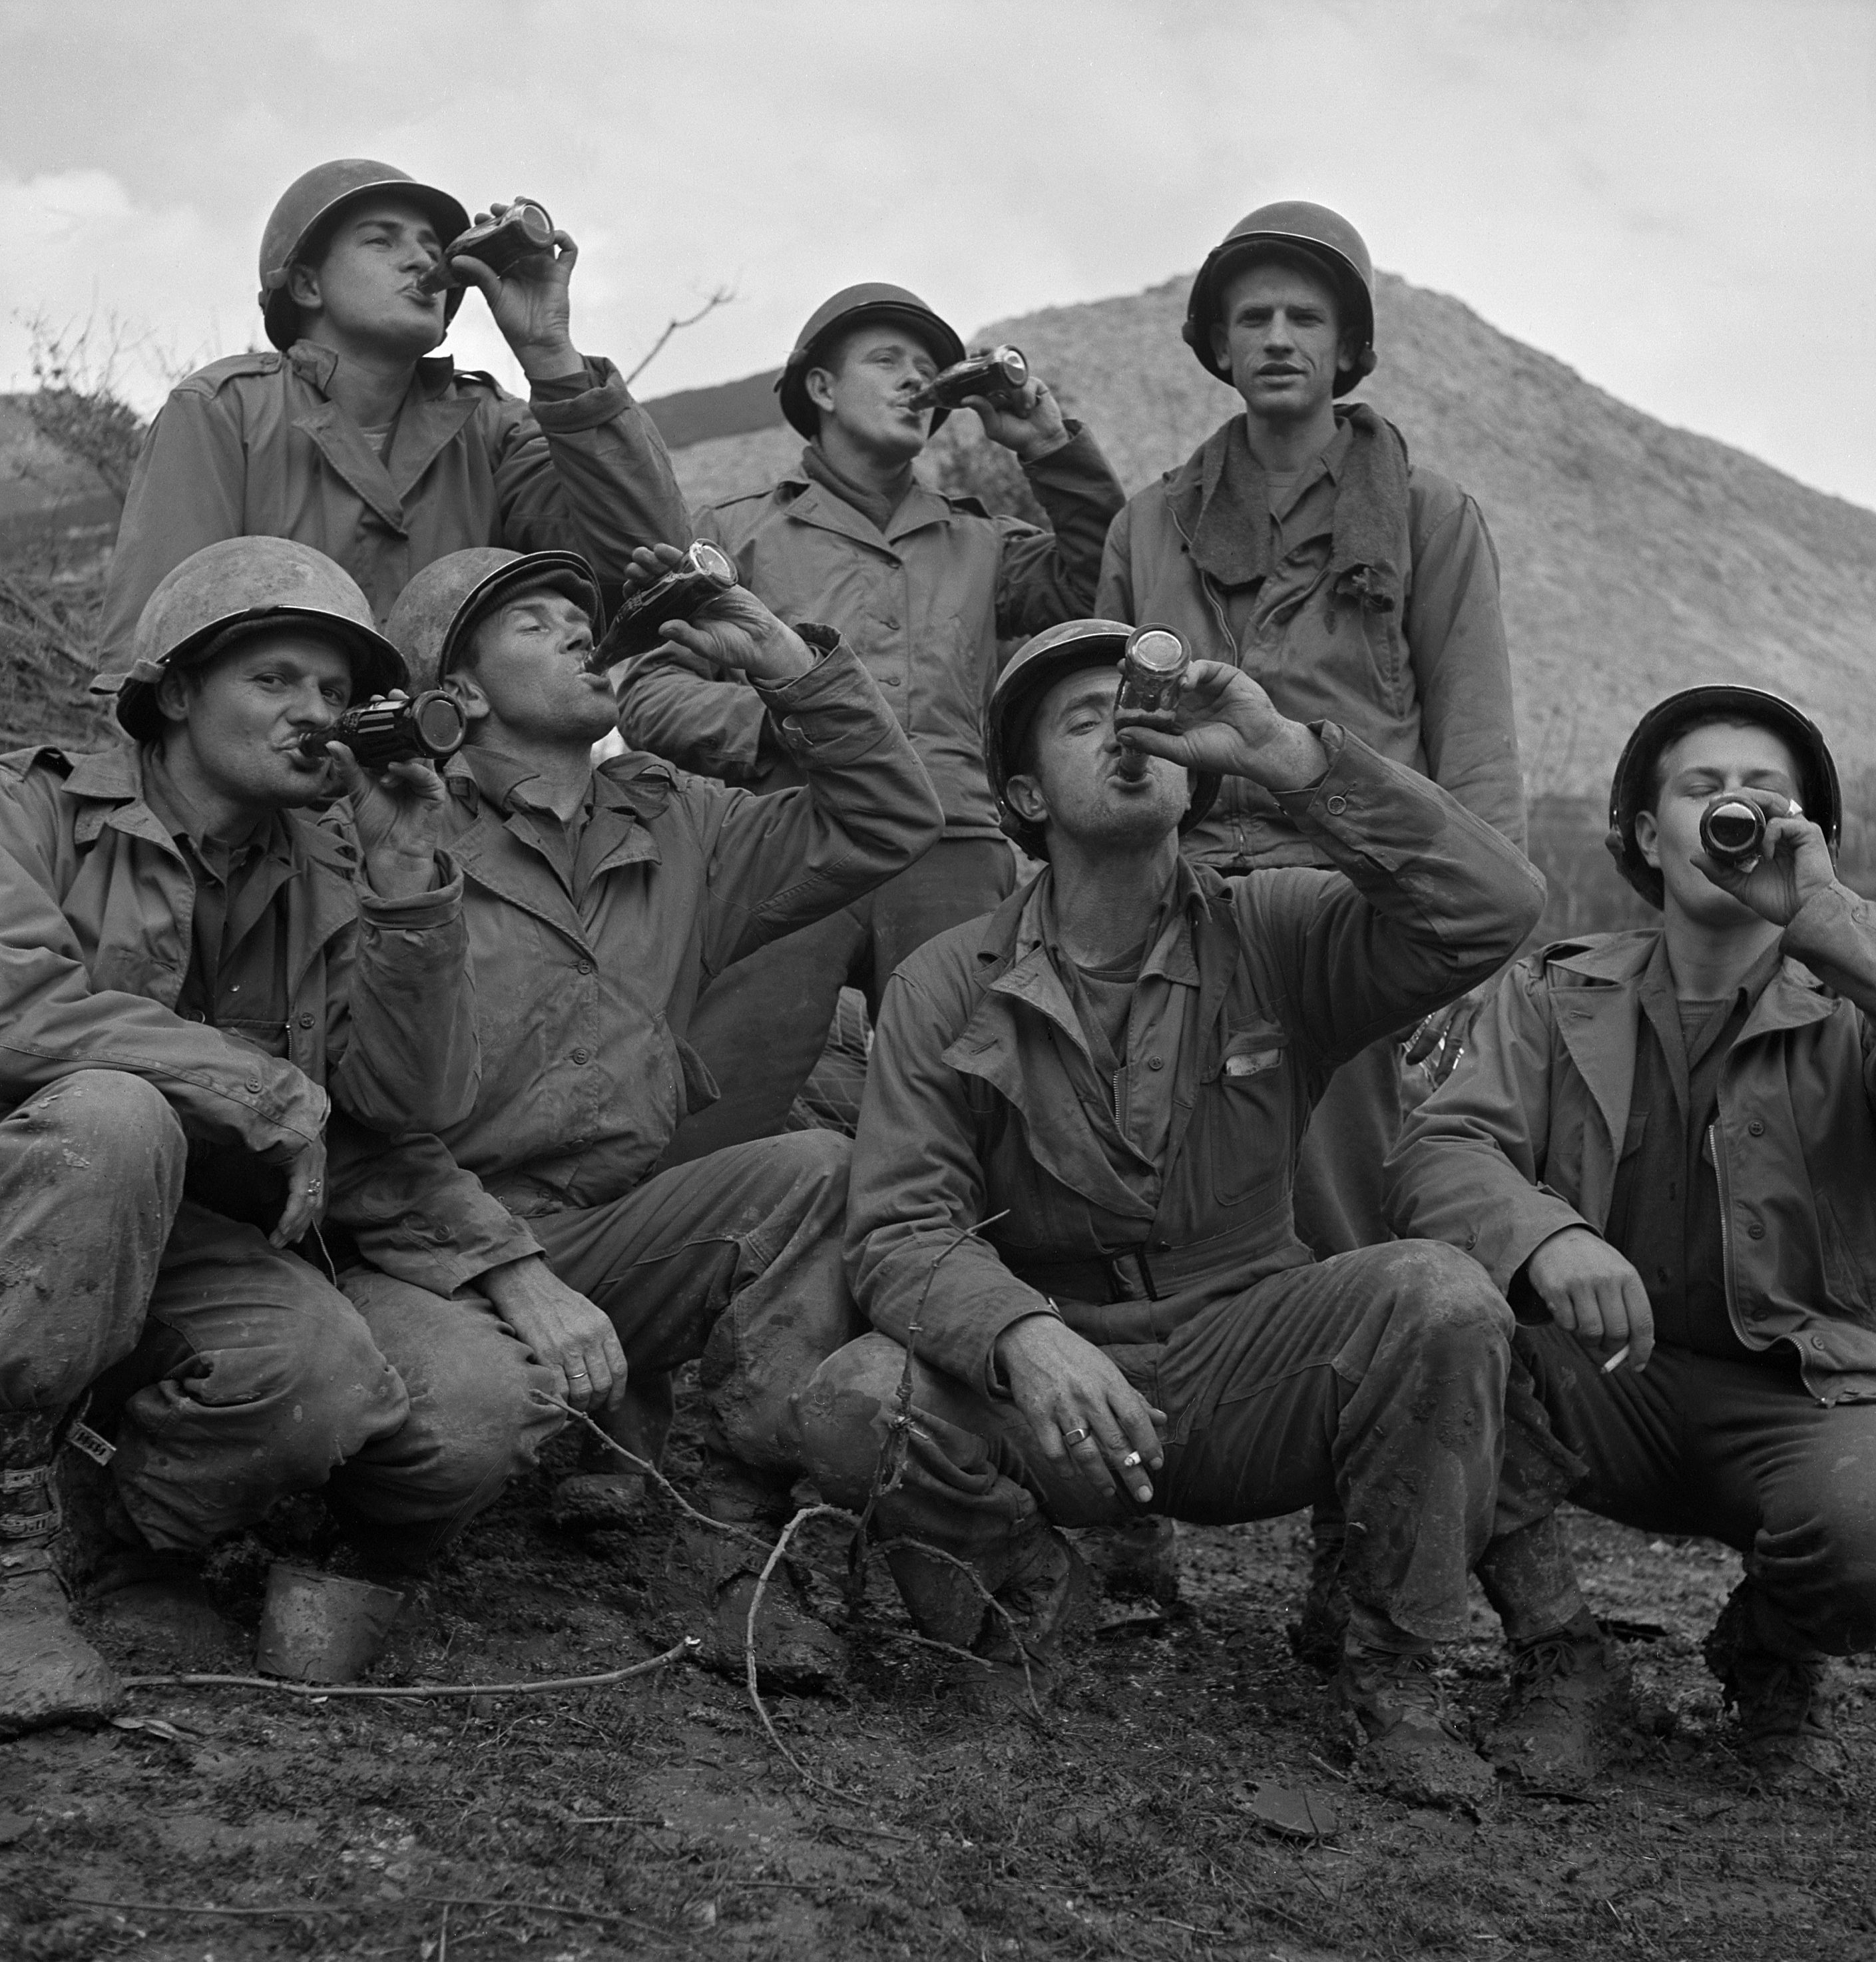 کوکاکولا با دولت ایالات متحده کار کرد تا اطمینان حاصل کند که سربازان، از جمله این افراد در ایتالیا، در طول جنگ جهانی دوم به کوکاکولا دسترسی دارند.